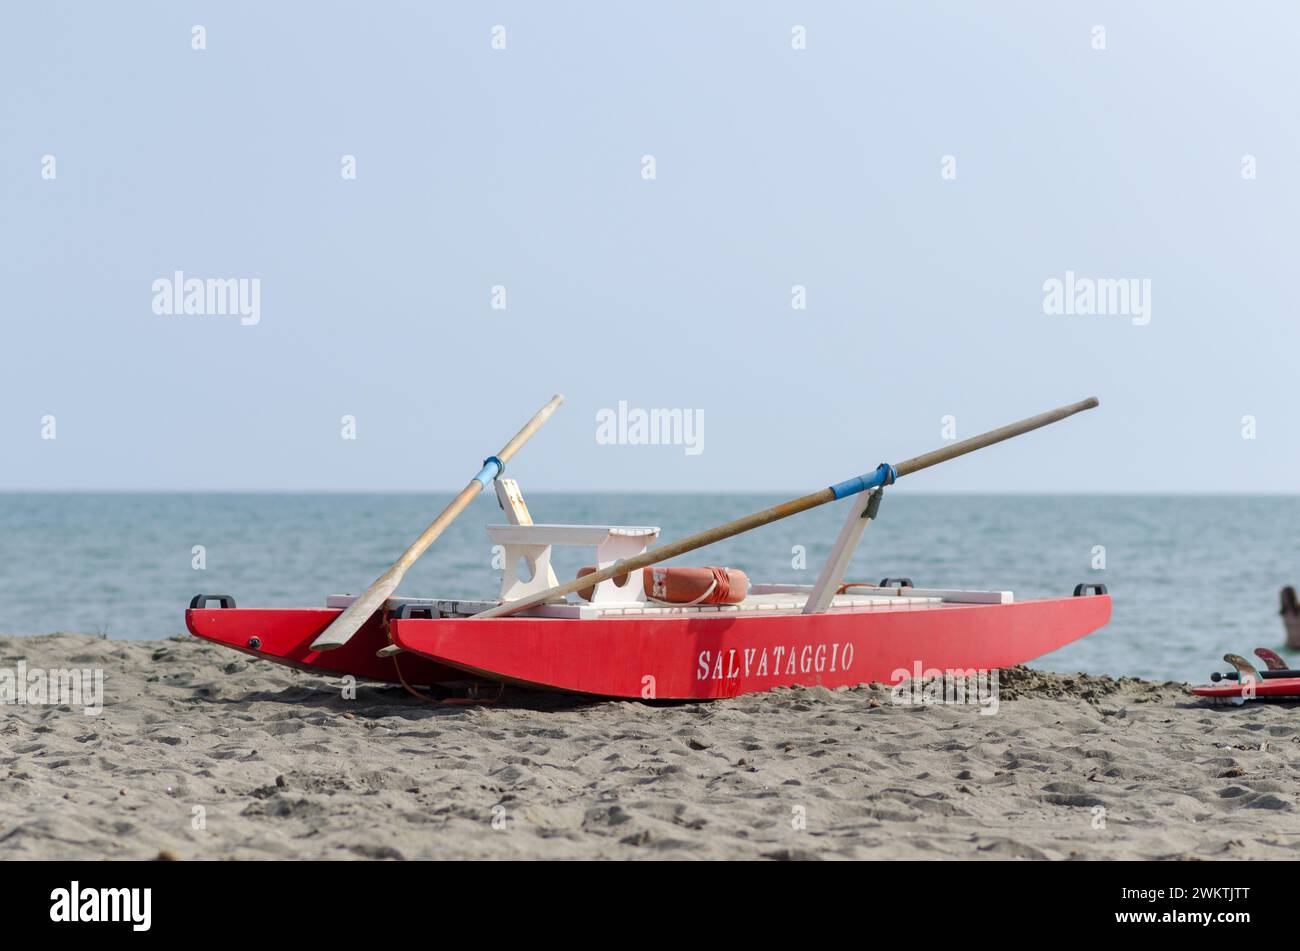 Rettungsboot am Strand für Notfälle, gut sichtbare rote Farbe. Meeresstrände, die Sicherheit an der Küste ist konstant, die Unfallgefahr ist hoch. Neuigkeiten Stockfoto